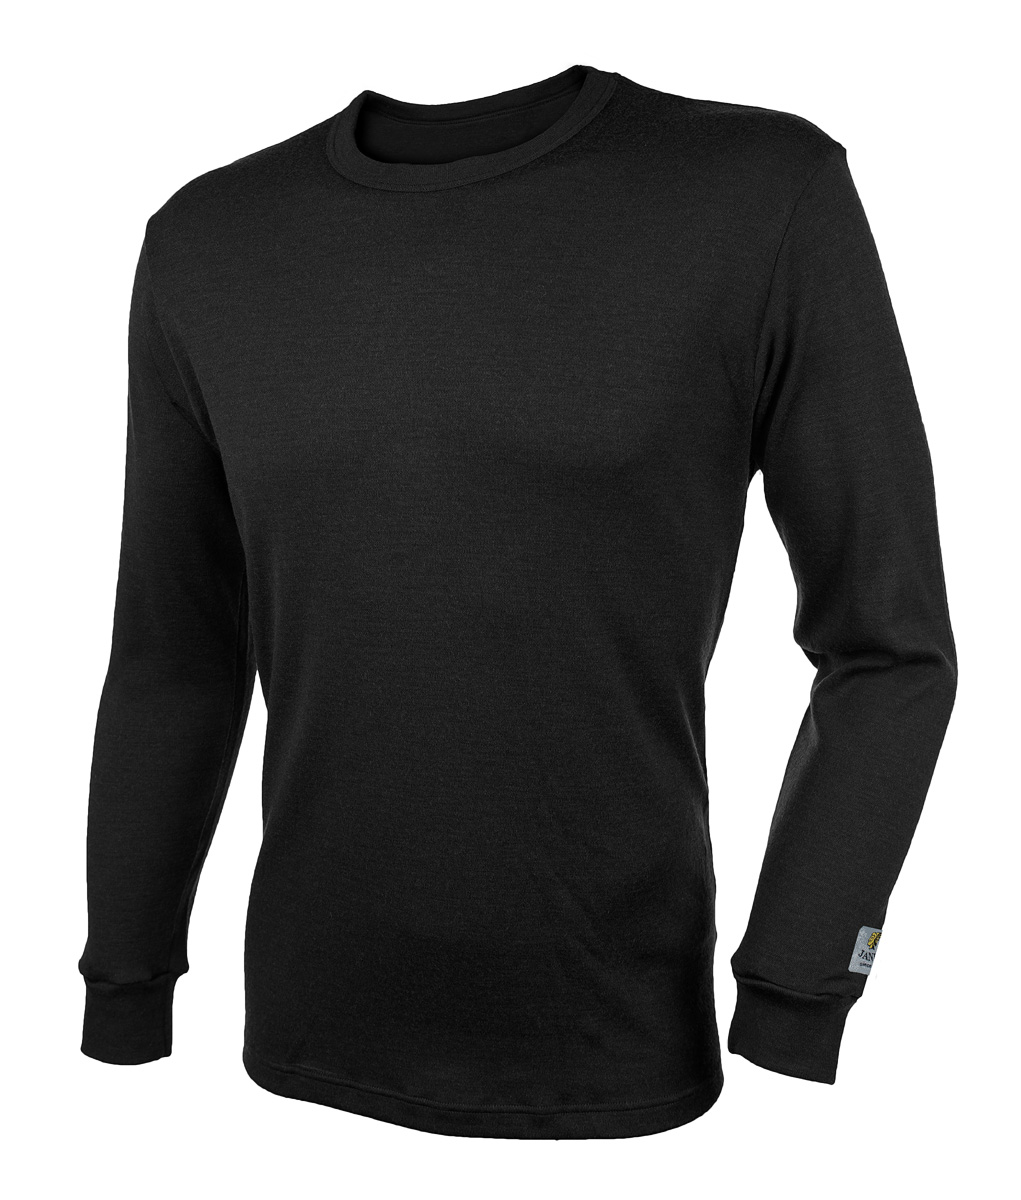 Janus BlackWool Extra herr tröja 100% merinoull svart